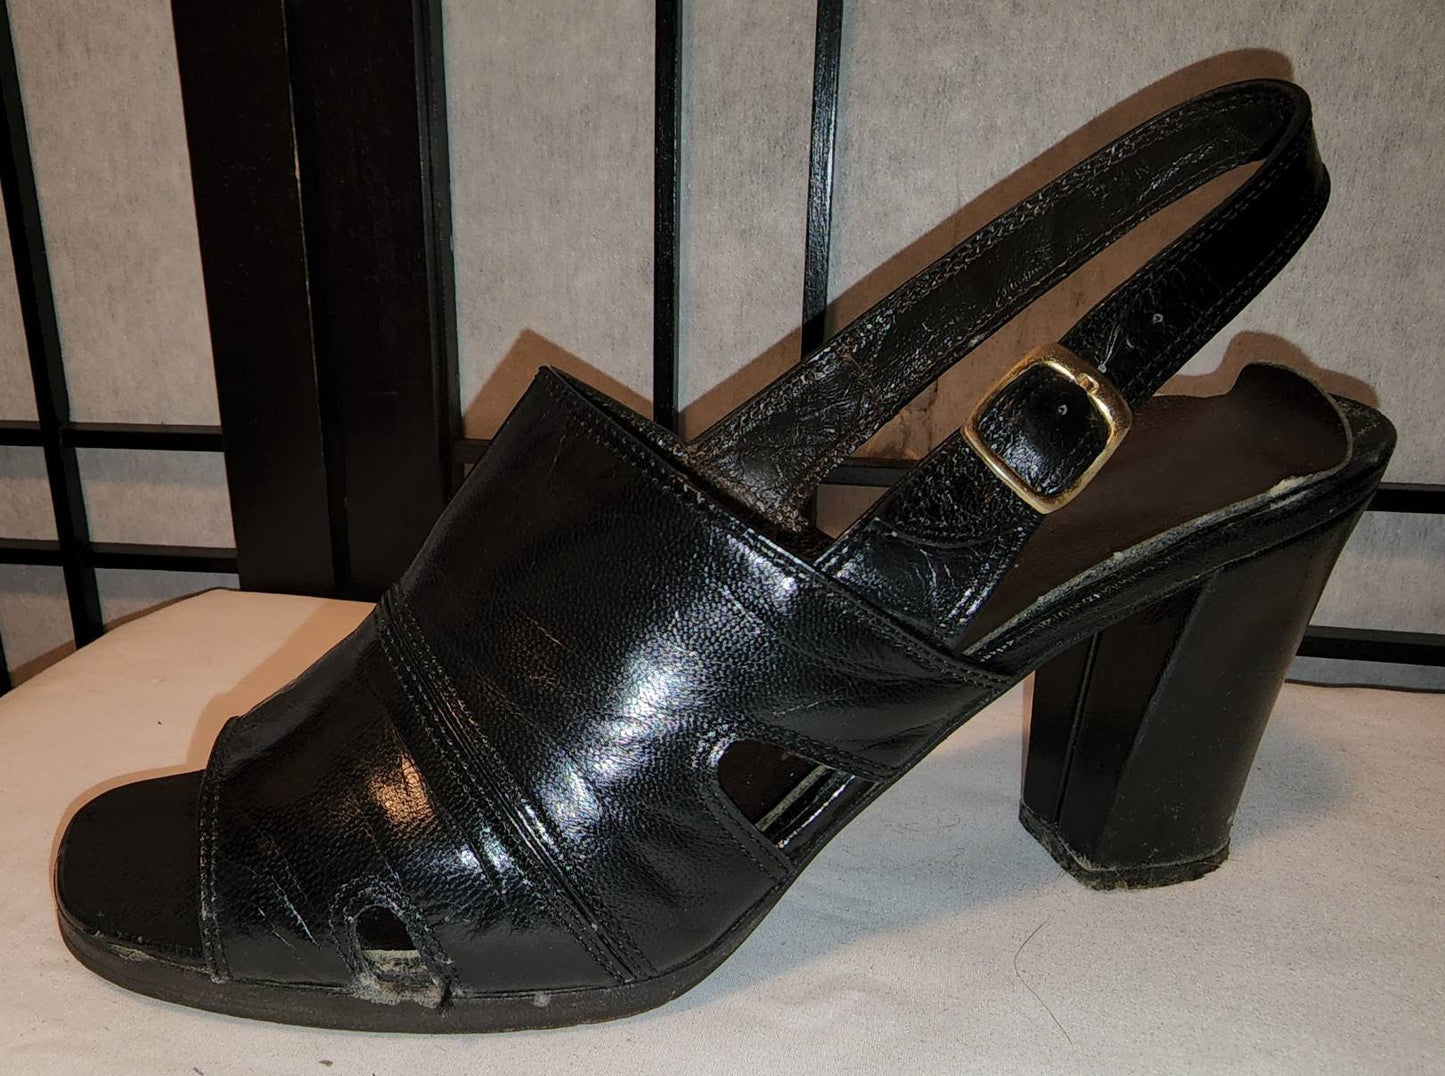 Vintage High Heel Sandals 1970s Black Leather Slingback High Heel Open Toe Shoes Boho 7 1/2 N